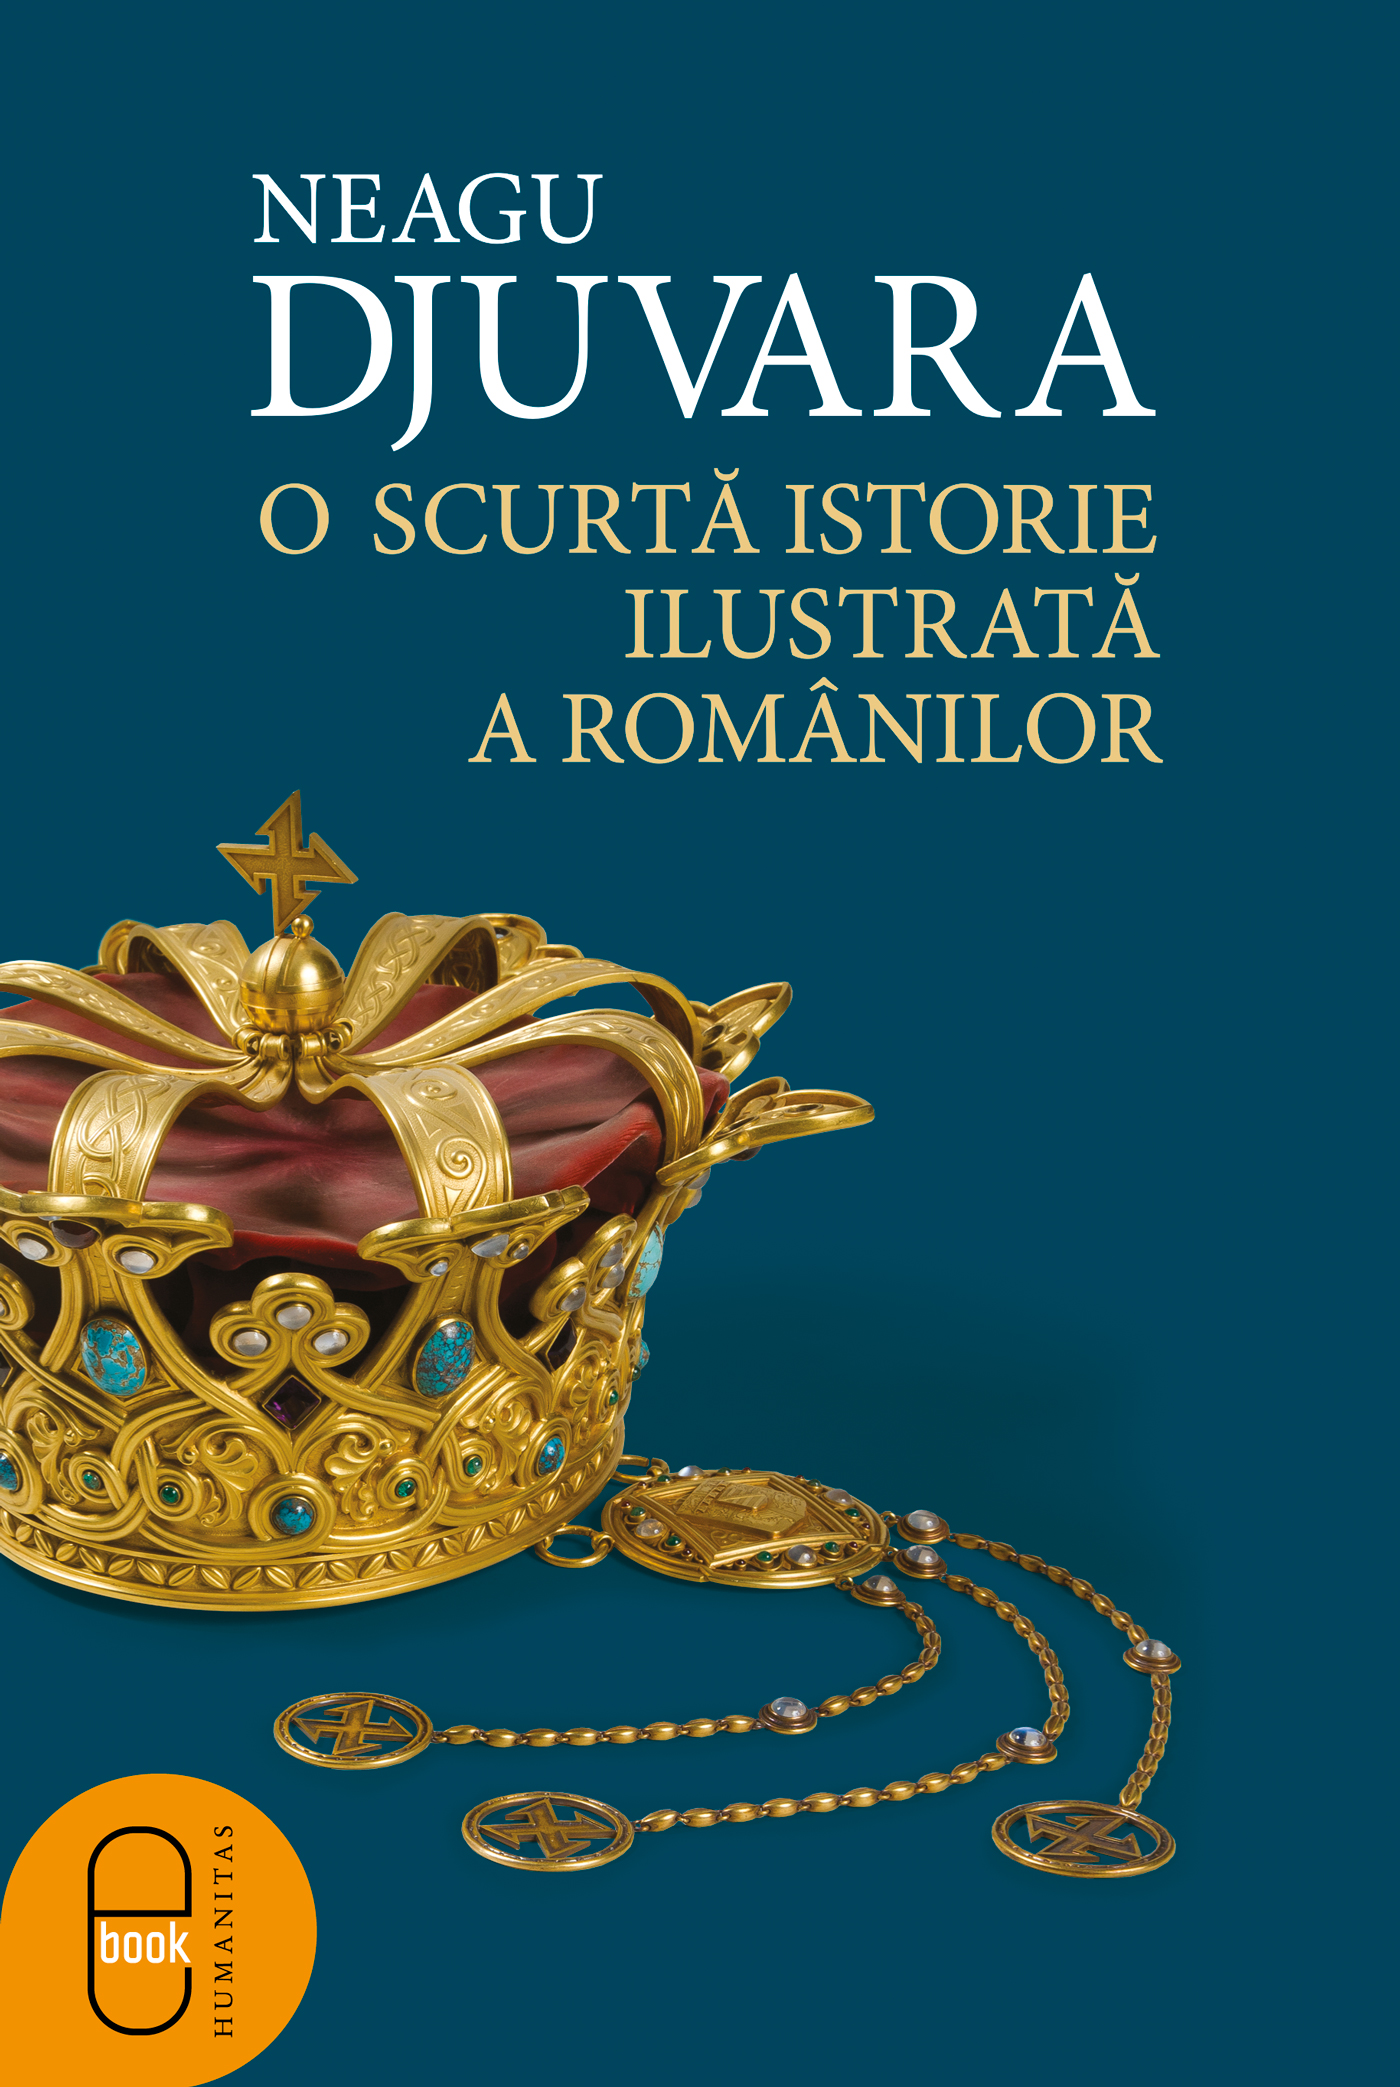 eBook O scurta istorie ilustrata a romanilor - Neagu Djuvara